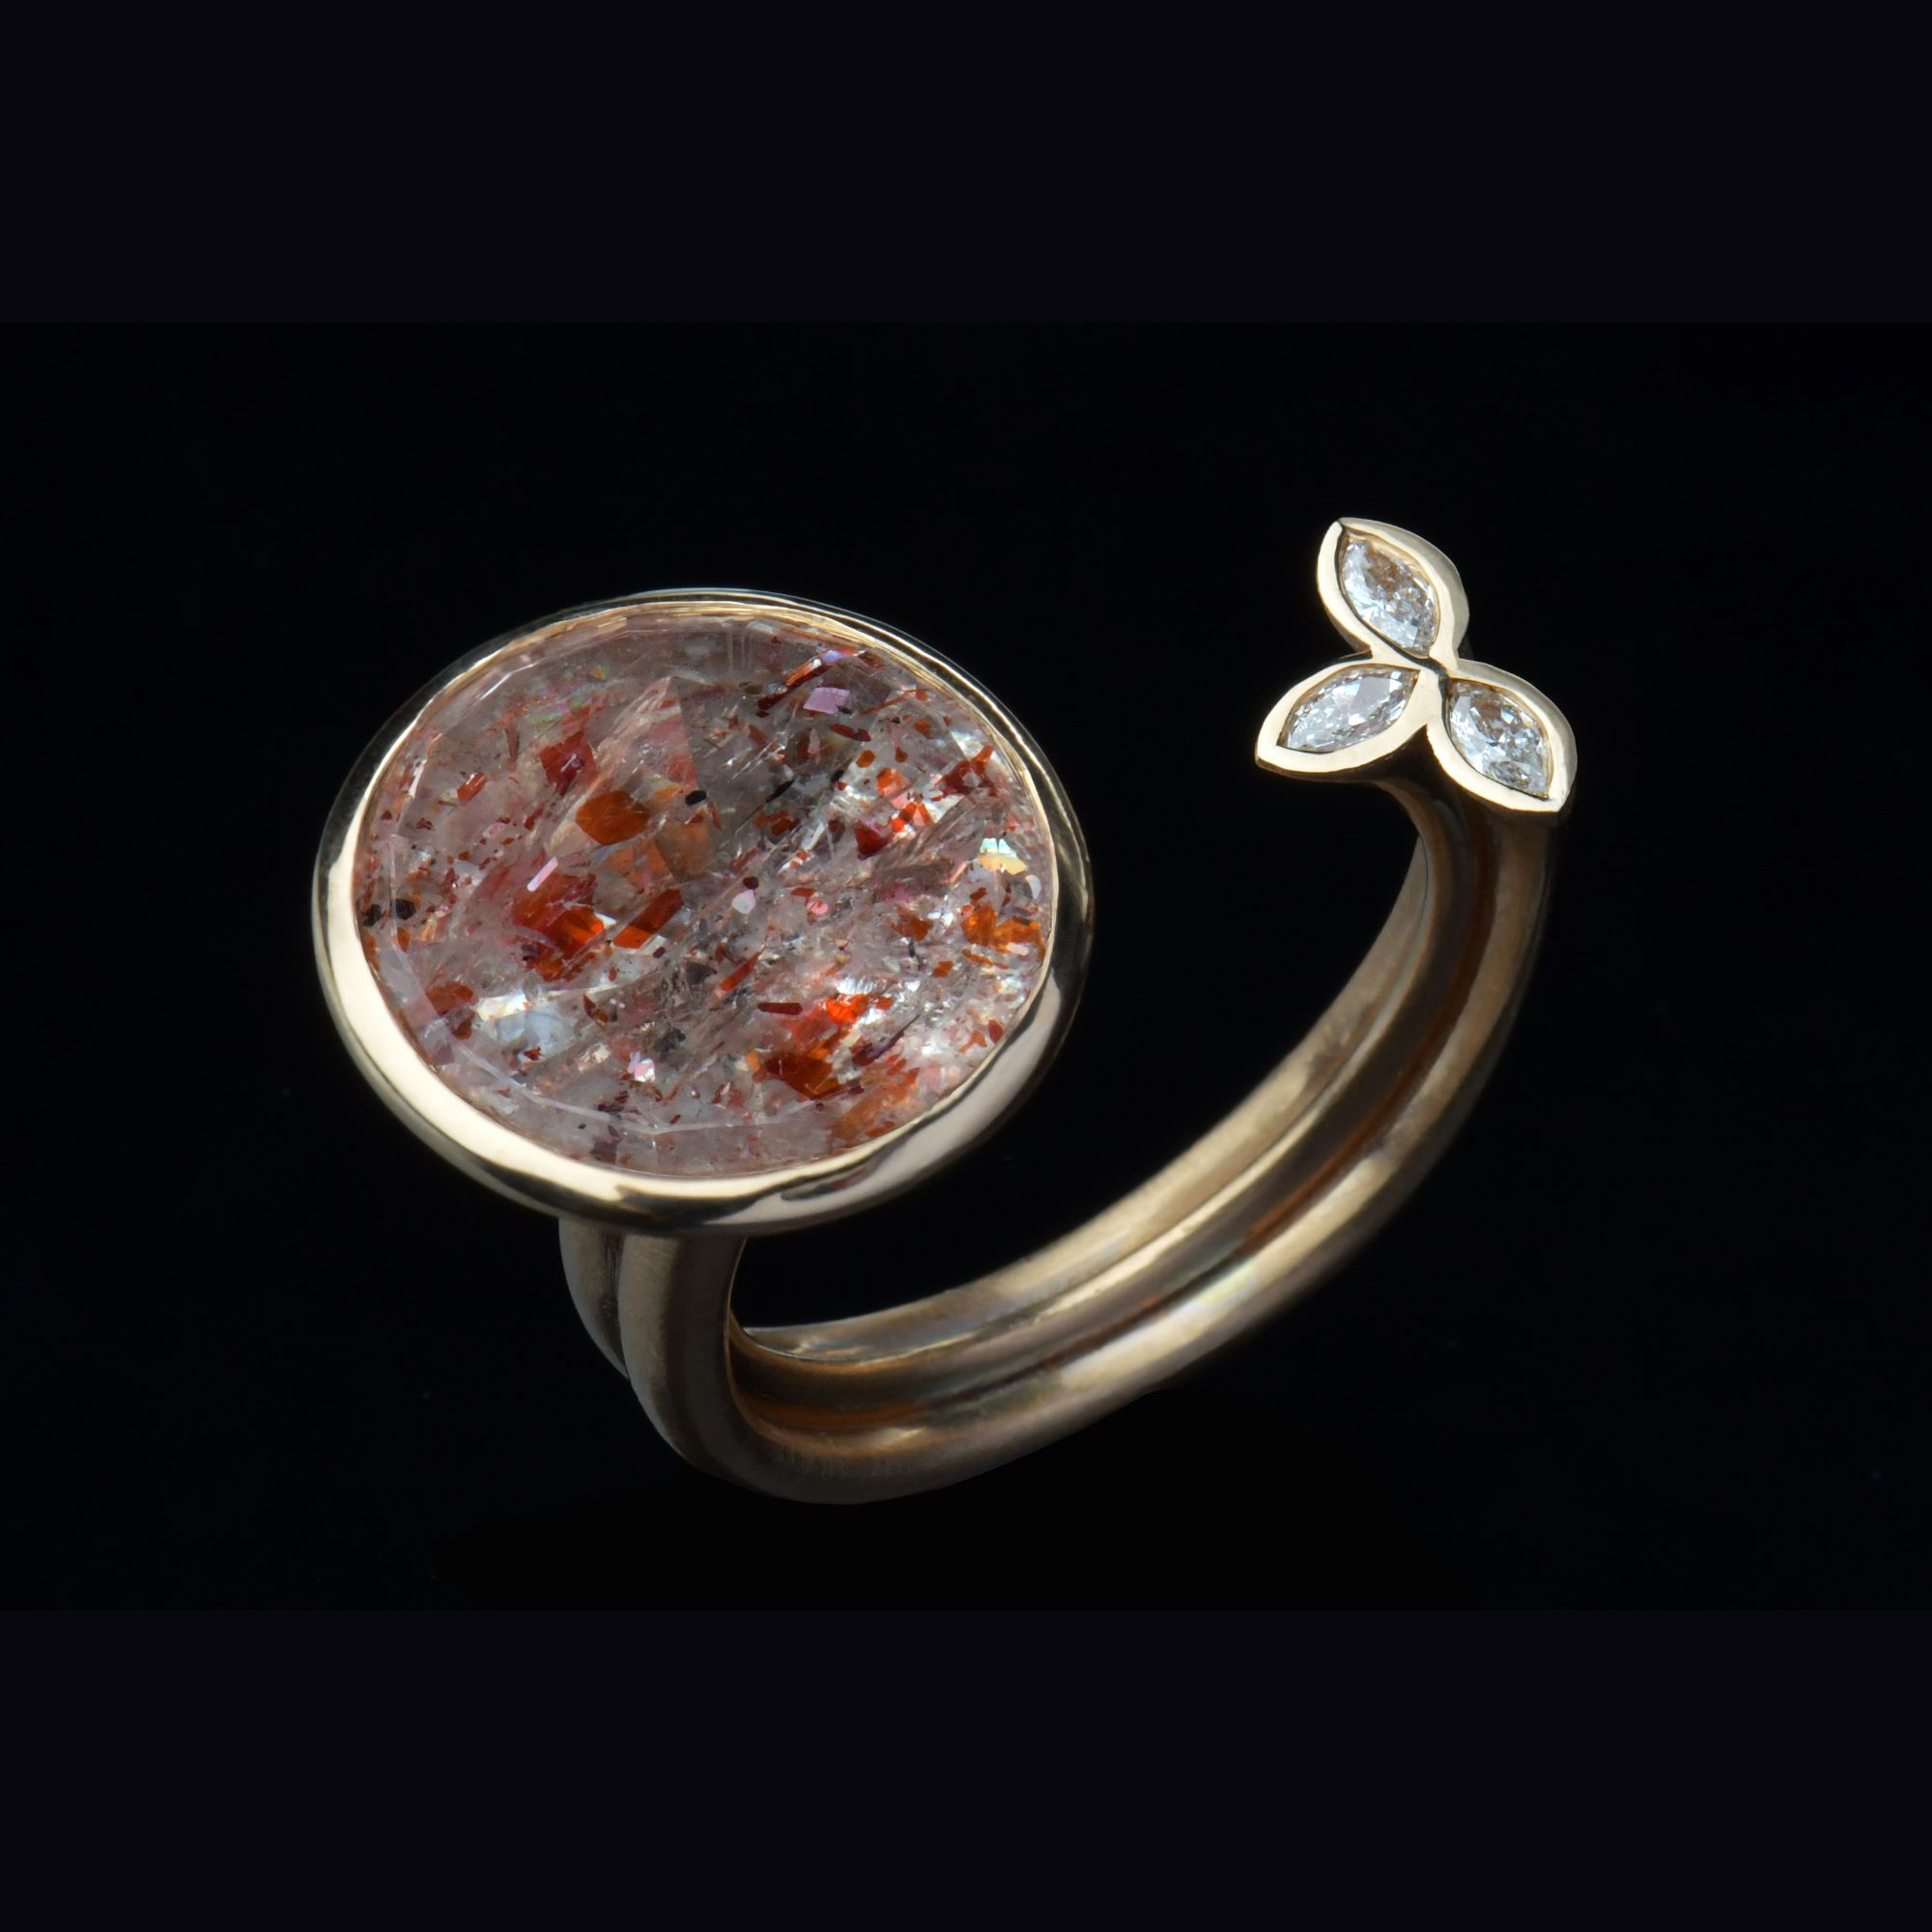 Der besondere Ring "Gothique" wird aus 750/- Roségold und einem Edelstein handgefertigt. Ausgestellt wir der Designerring in der Golschmiede Galeriehaus Grosche in Castrop-Rauxel in NRW.